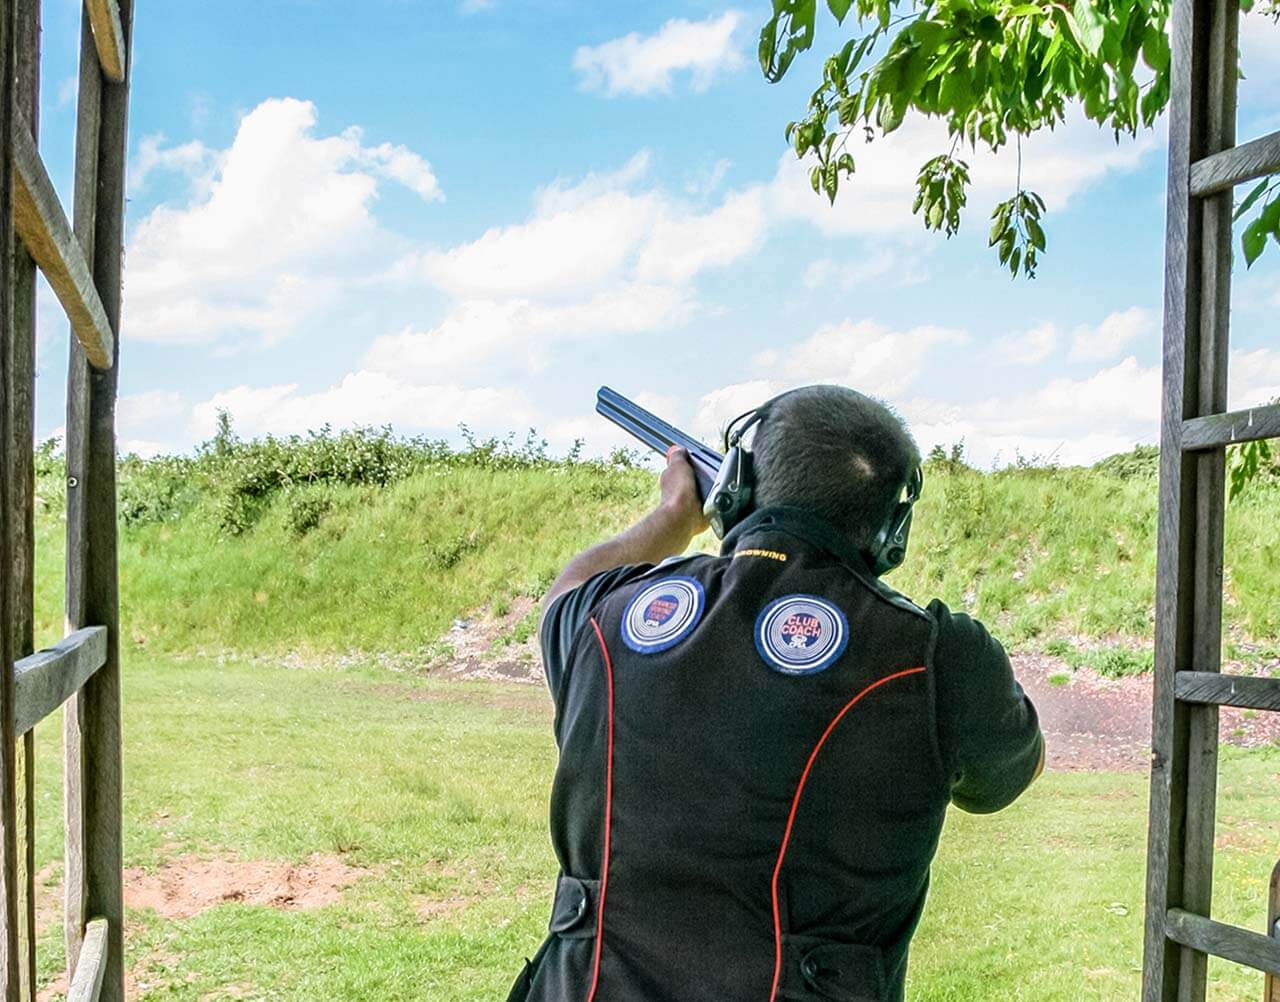 A man aiming down a range with a shotgun